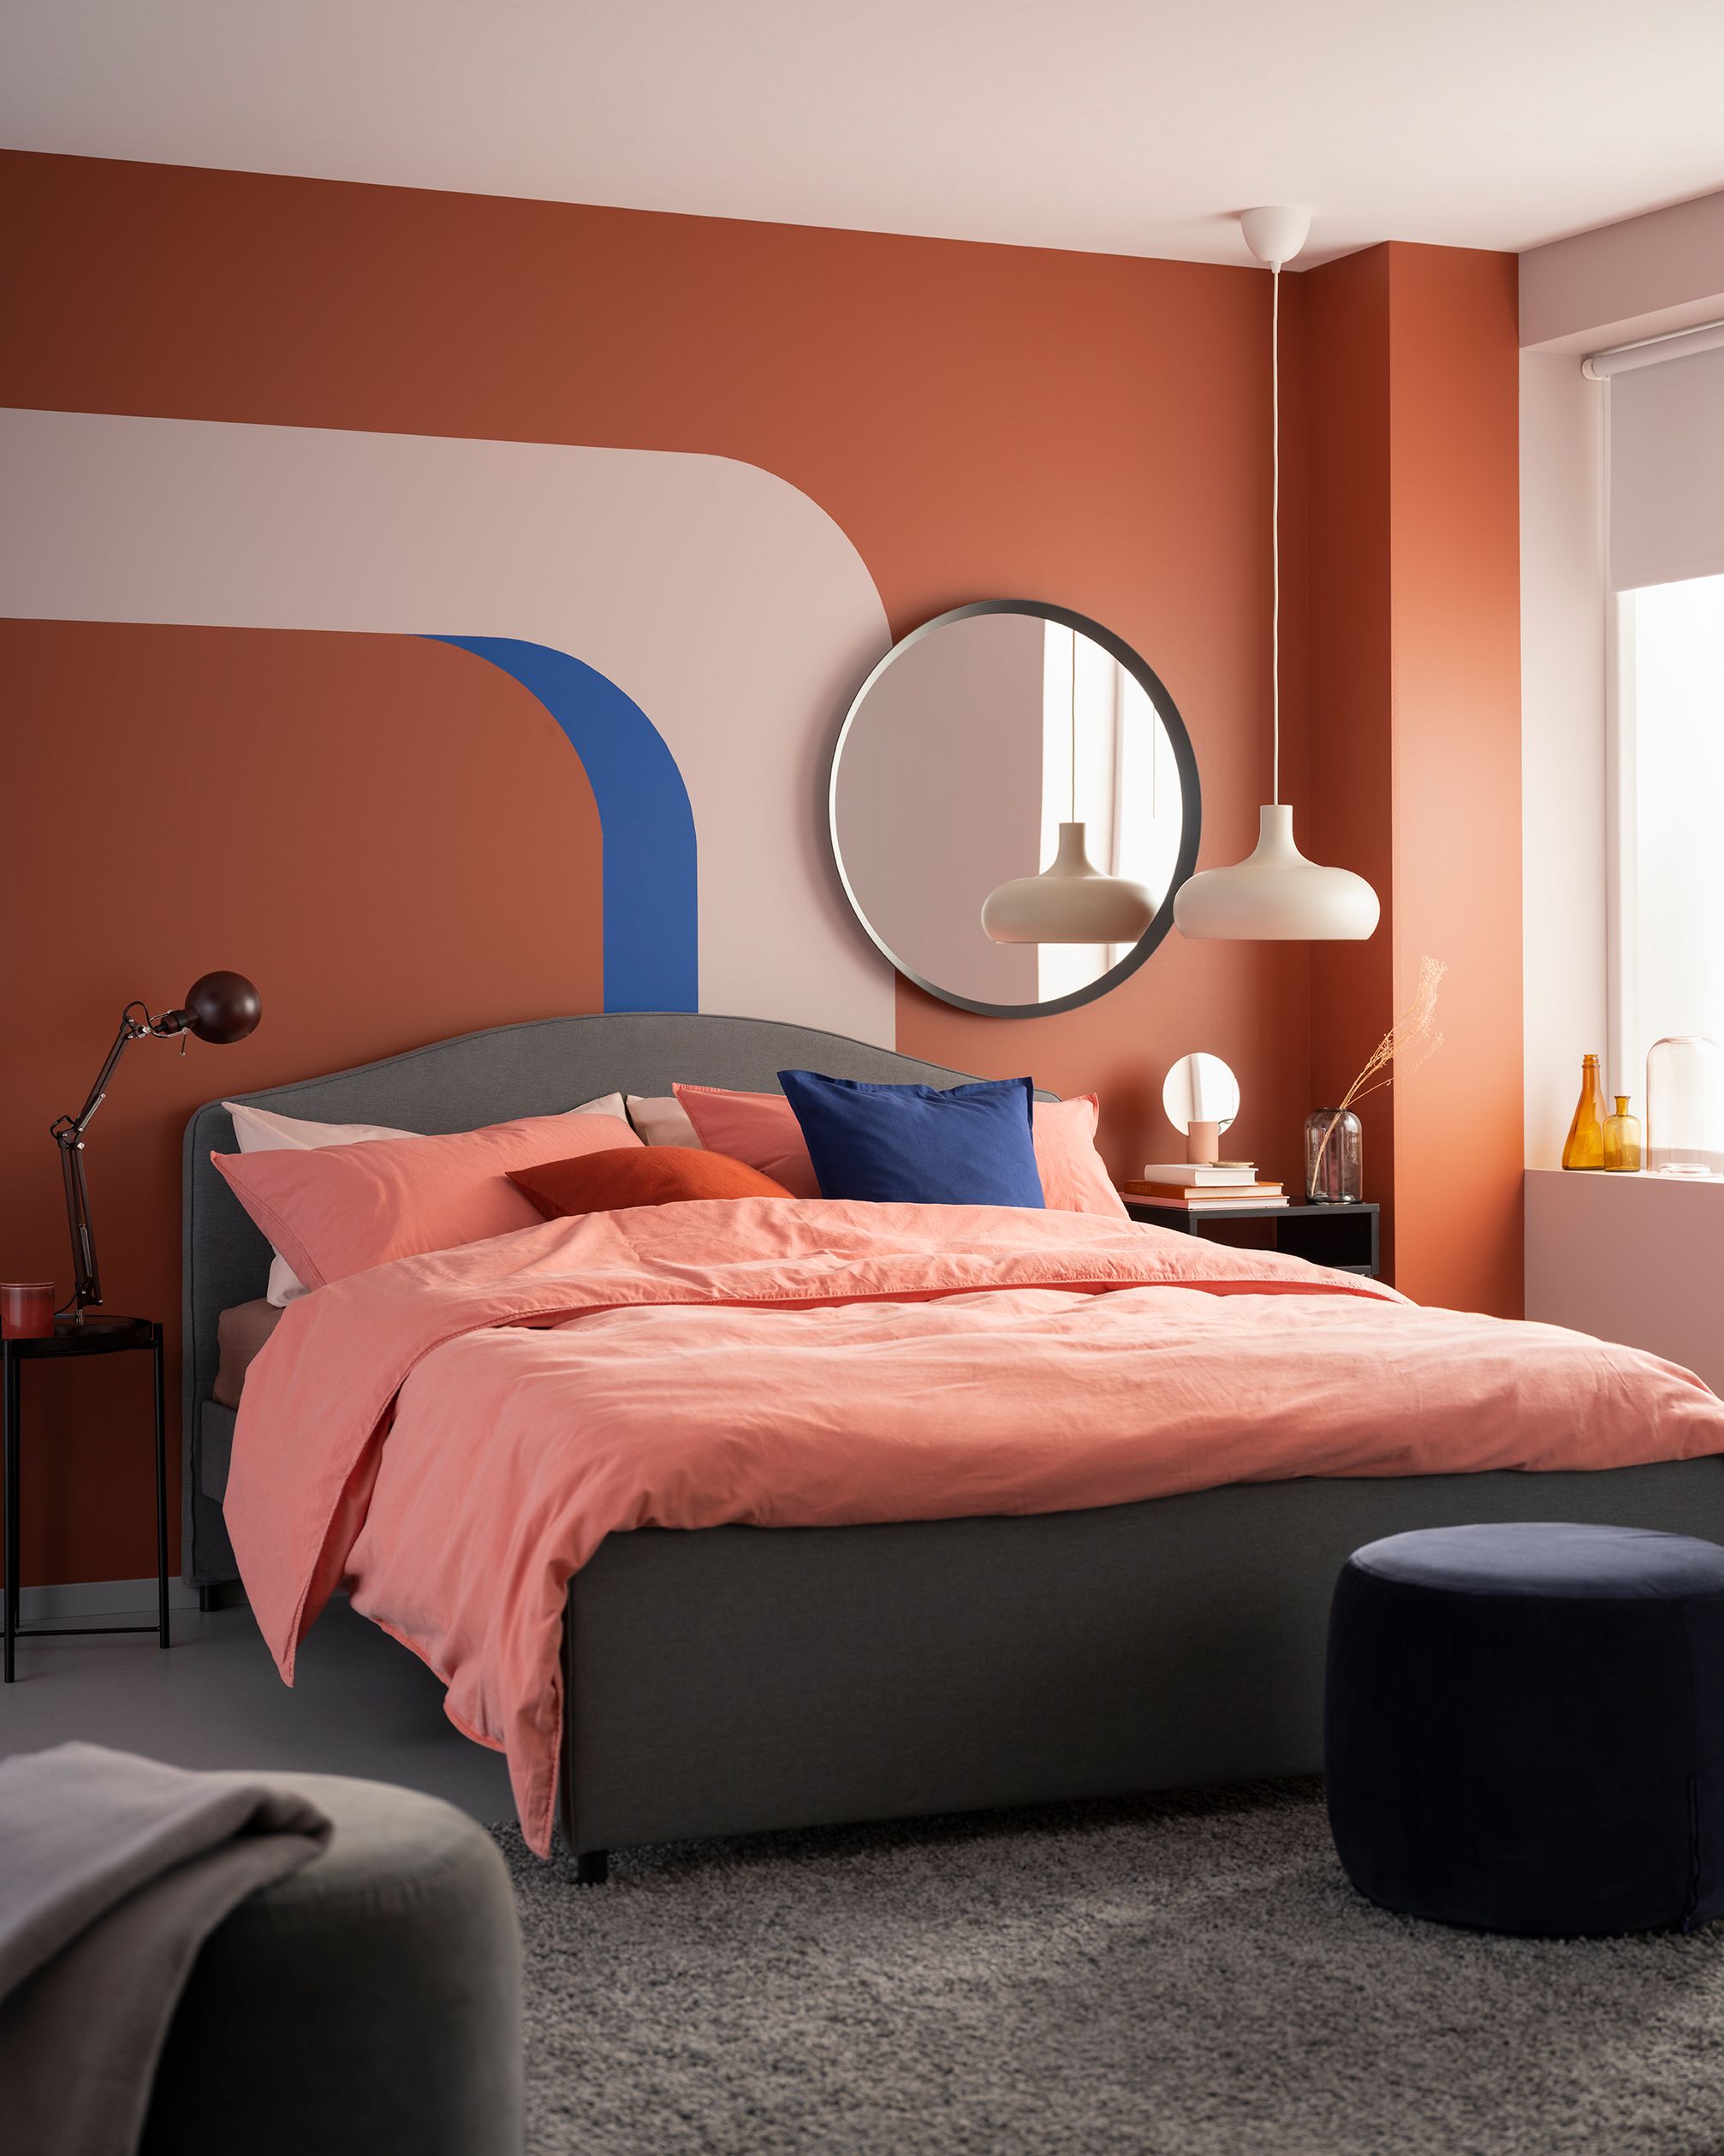 10 Dormitorios Del Proximo Catalogo De Ikea Que Nos Han Encantado